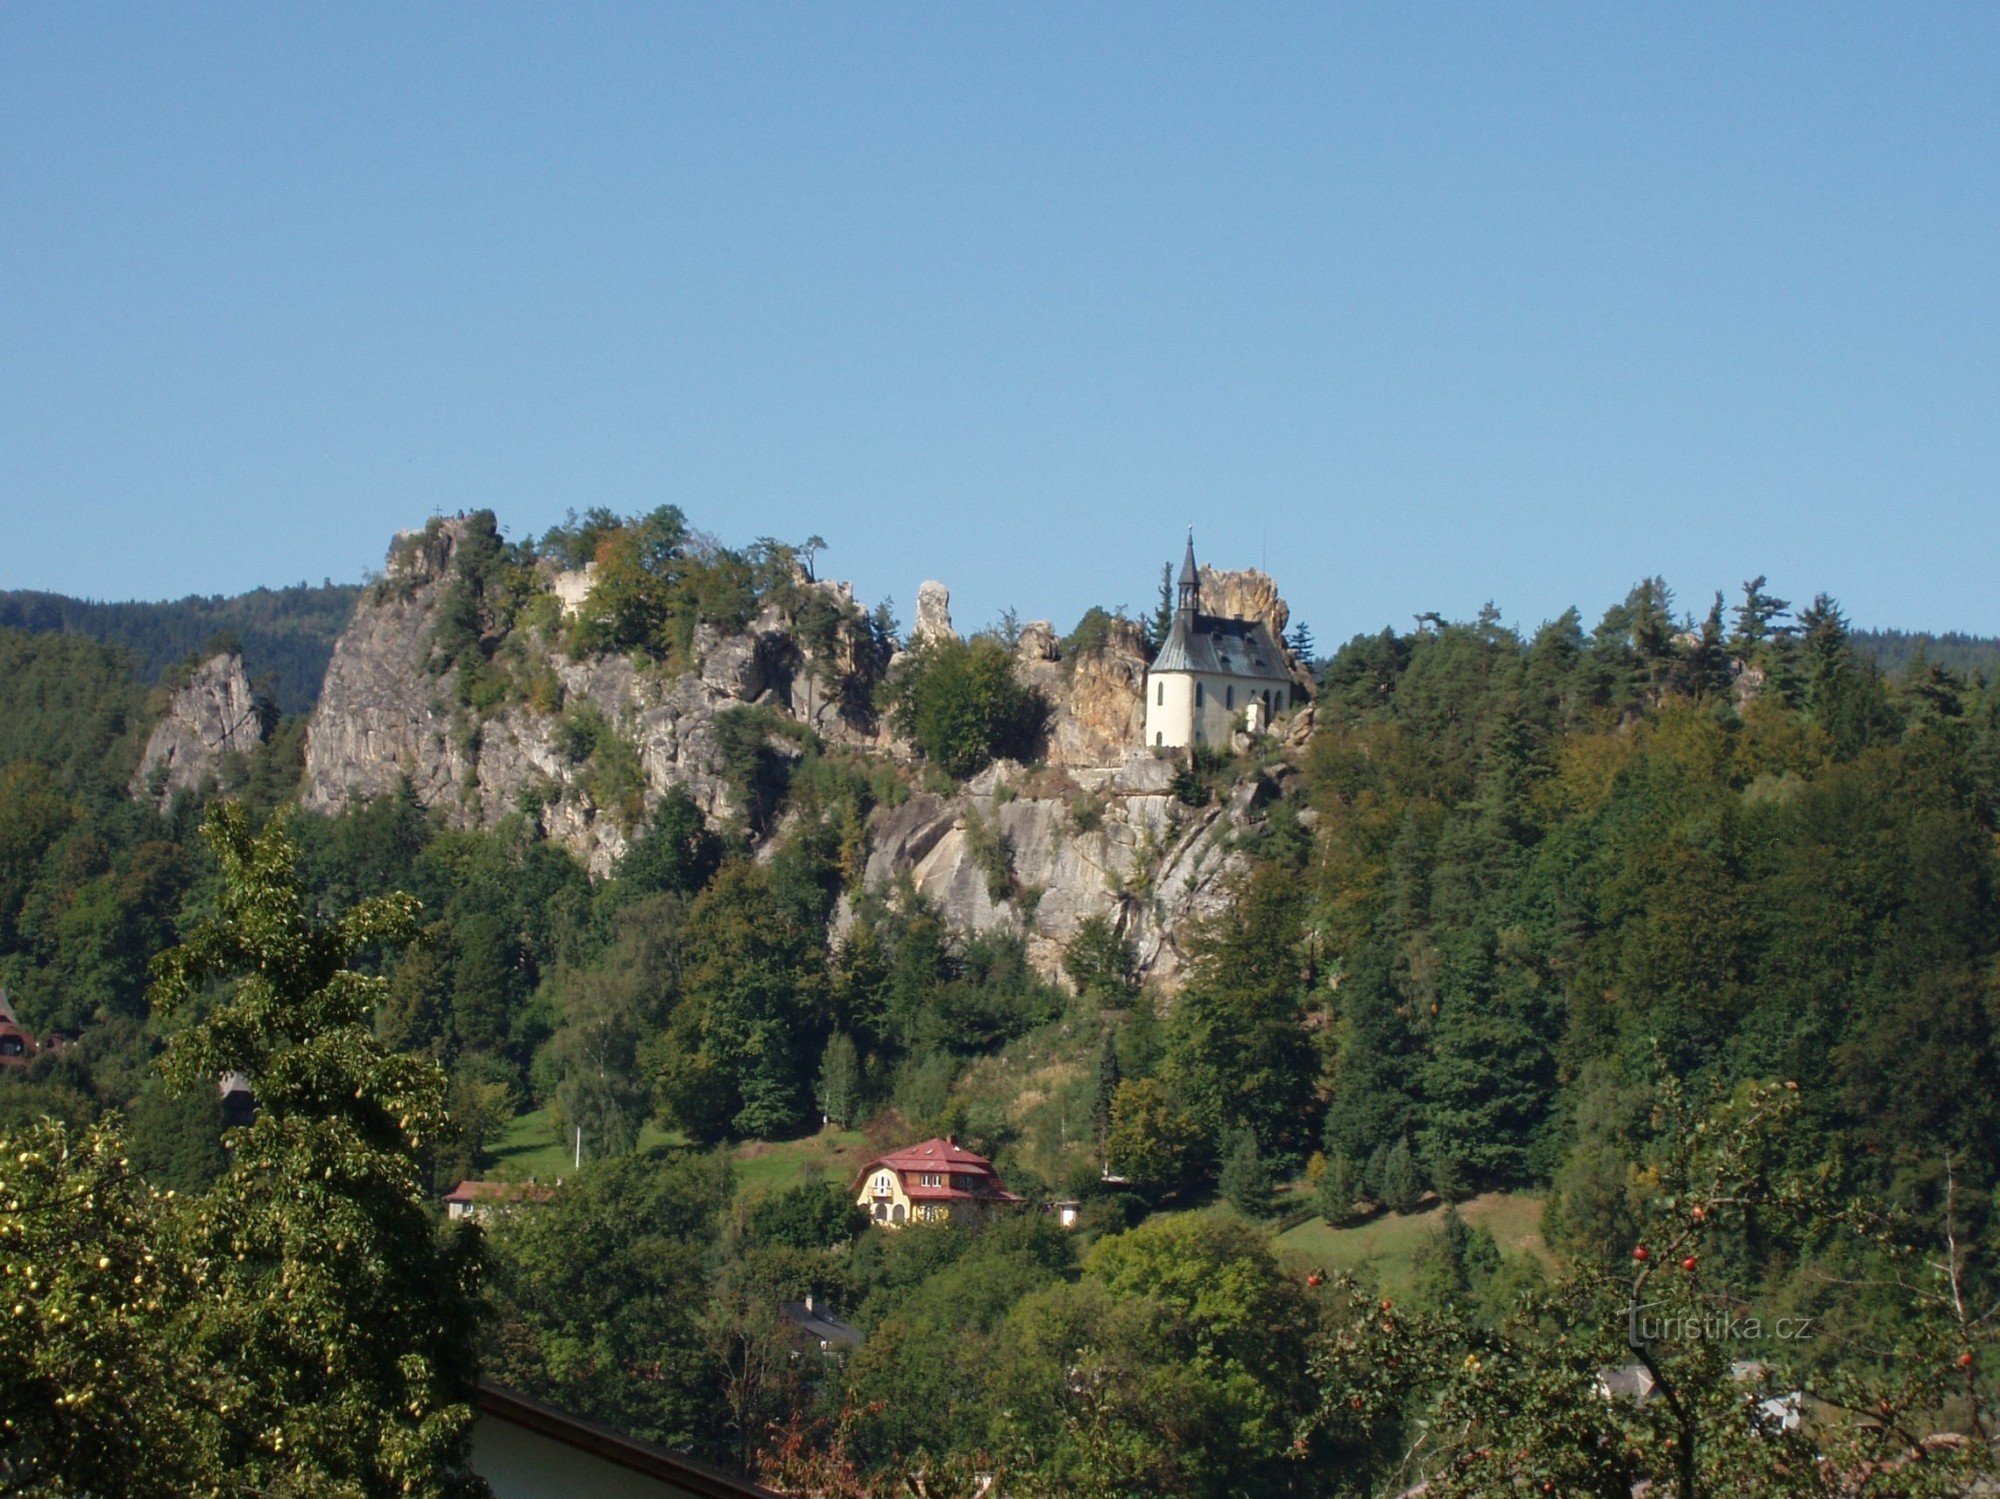 Vranovské ridge in summer